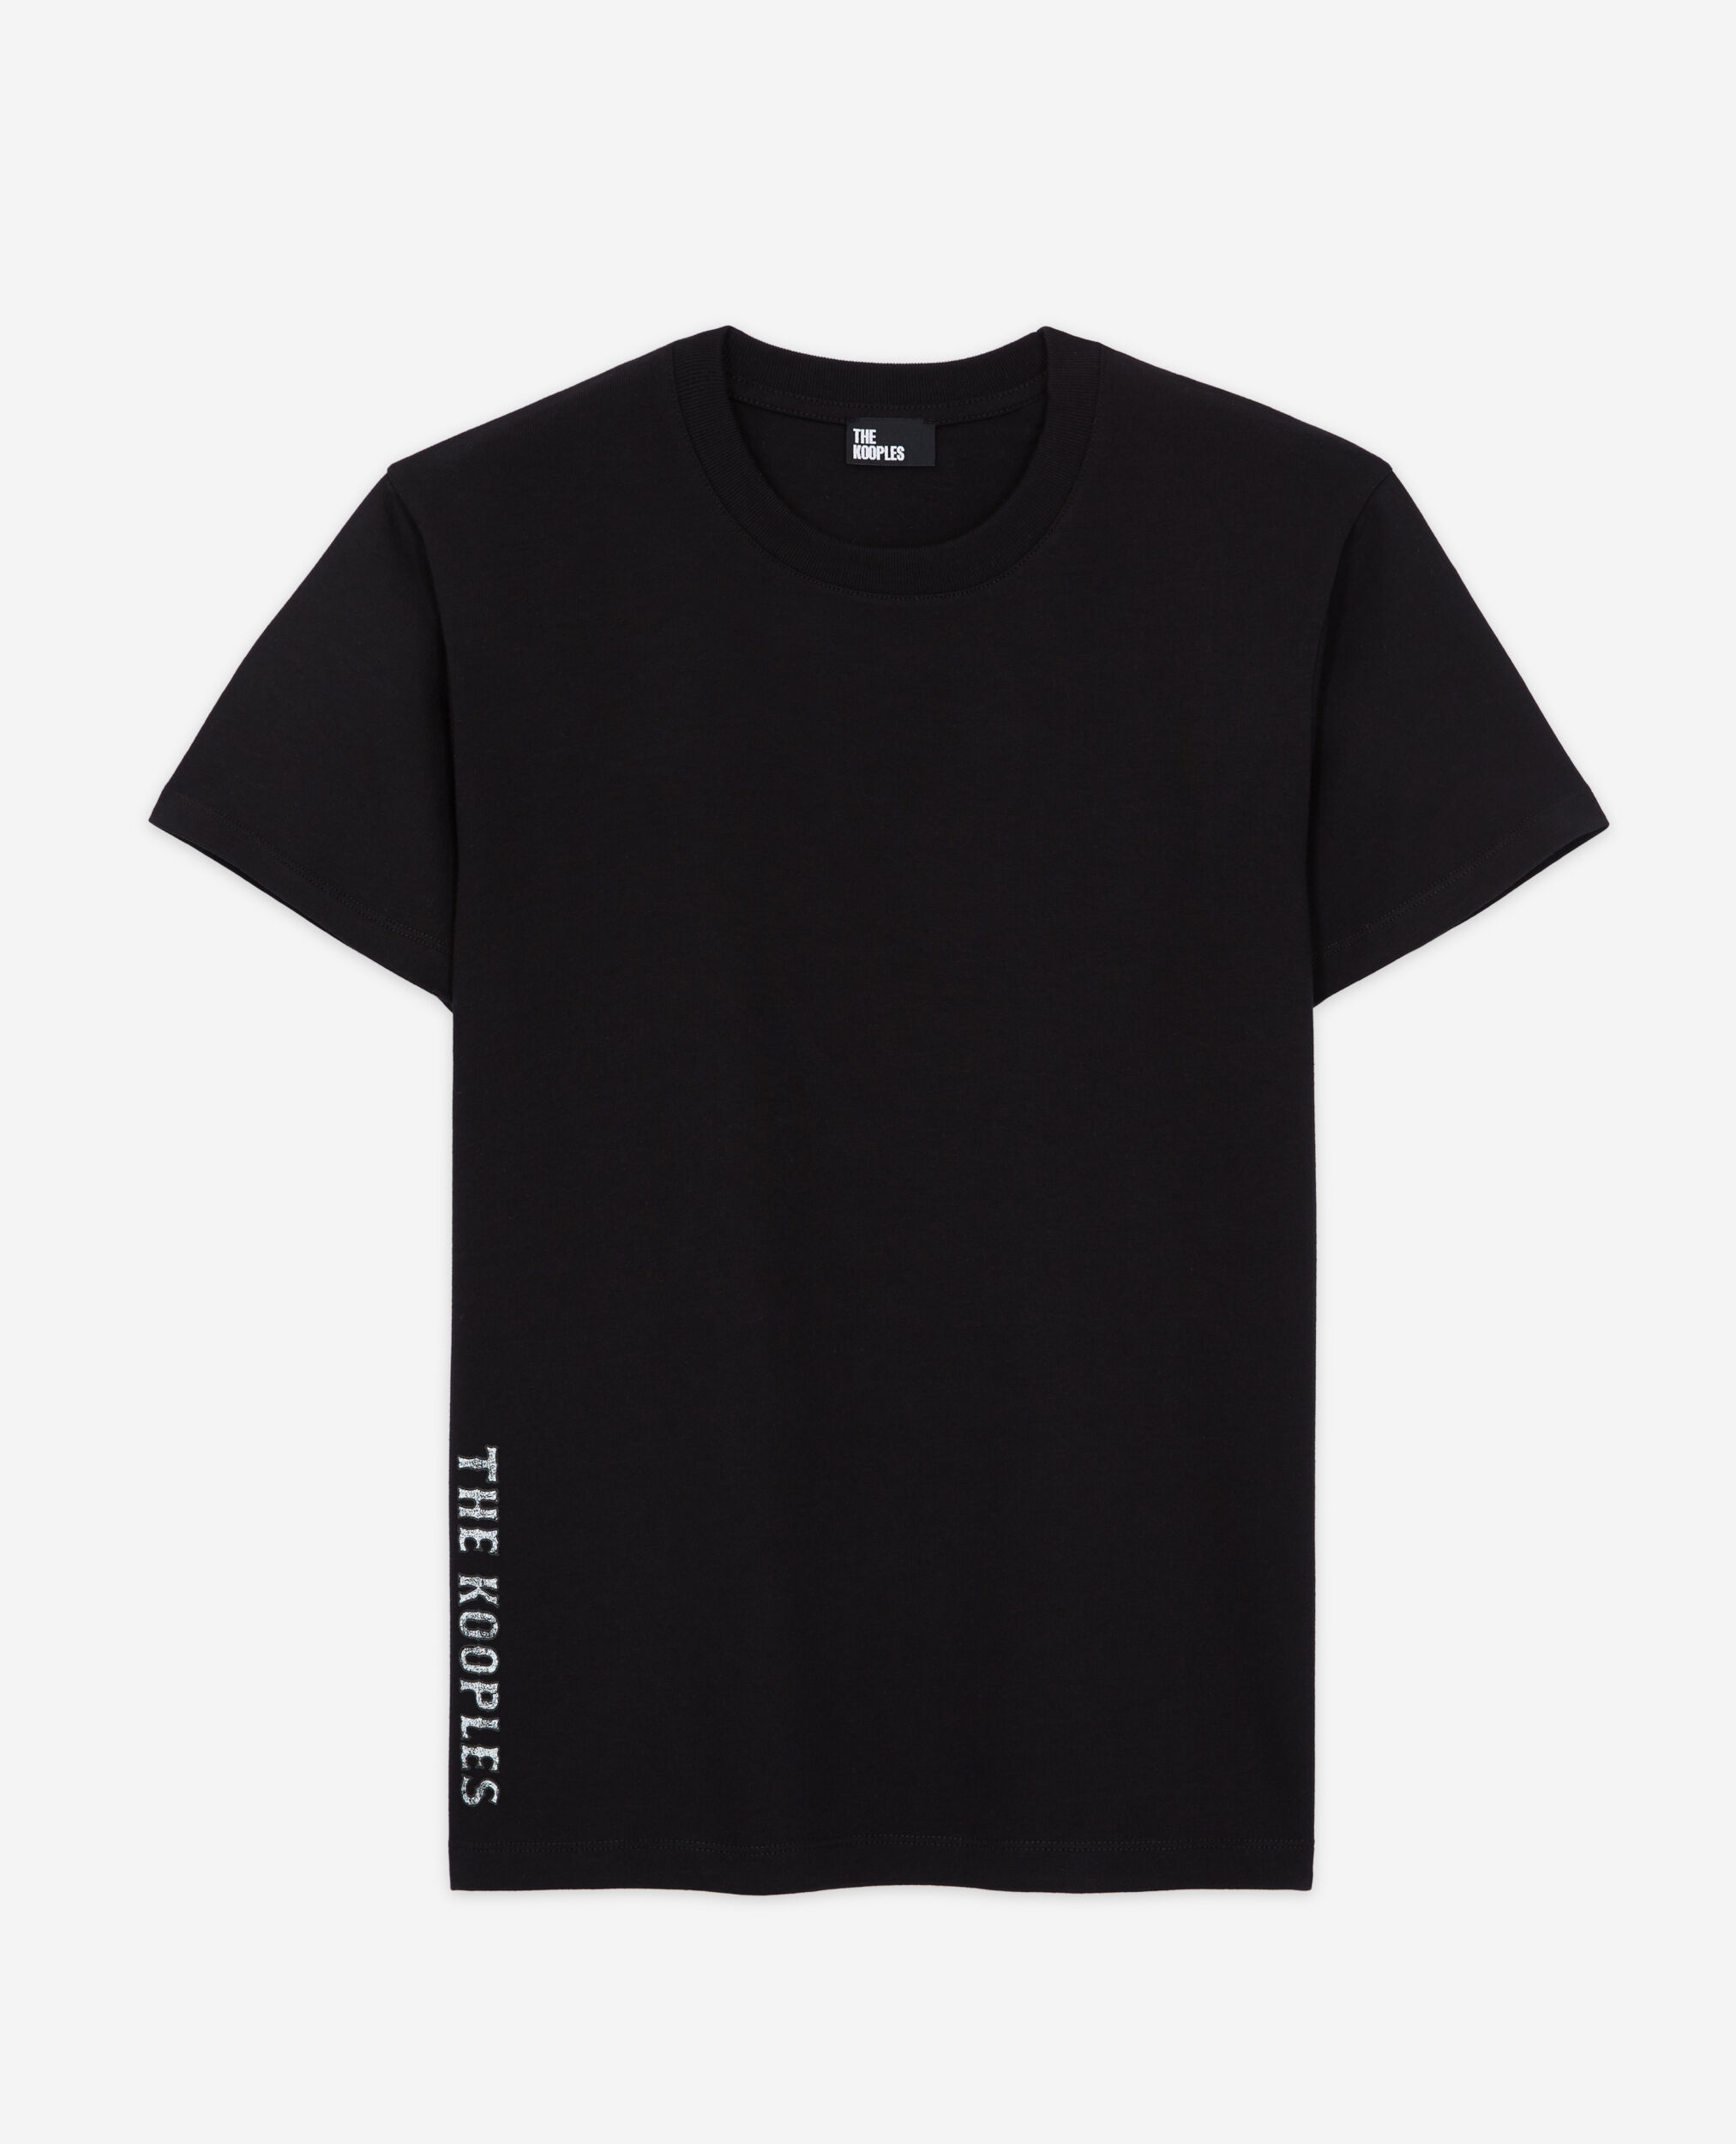 Black screen print T-shirt, BLACK, hi-res image number null